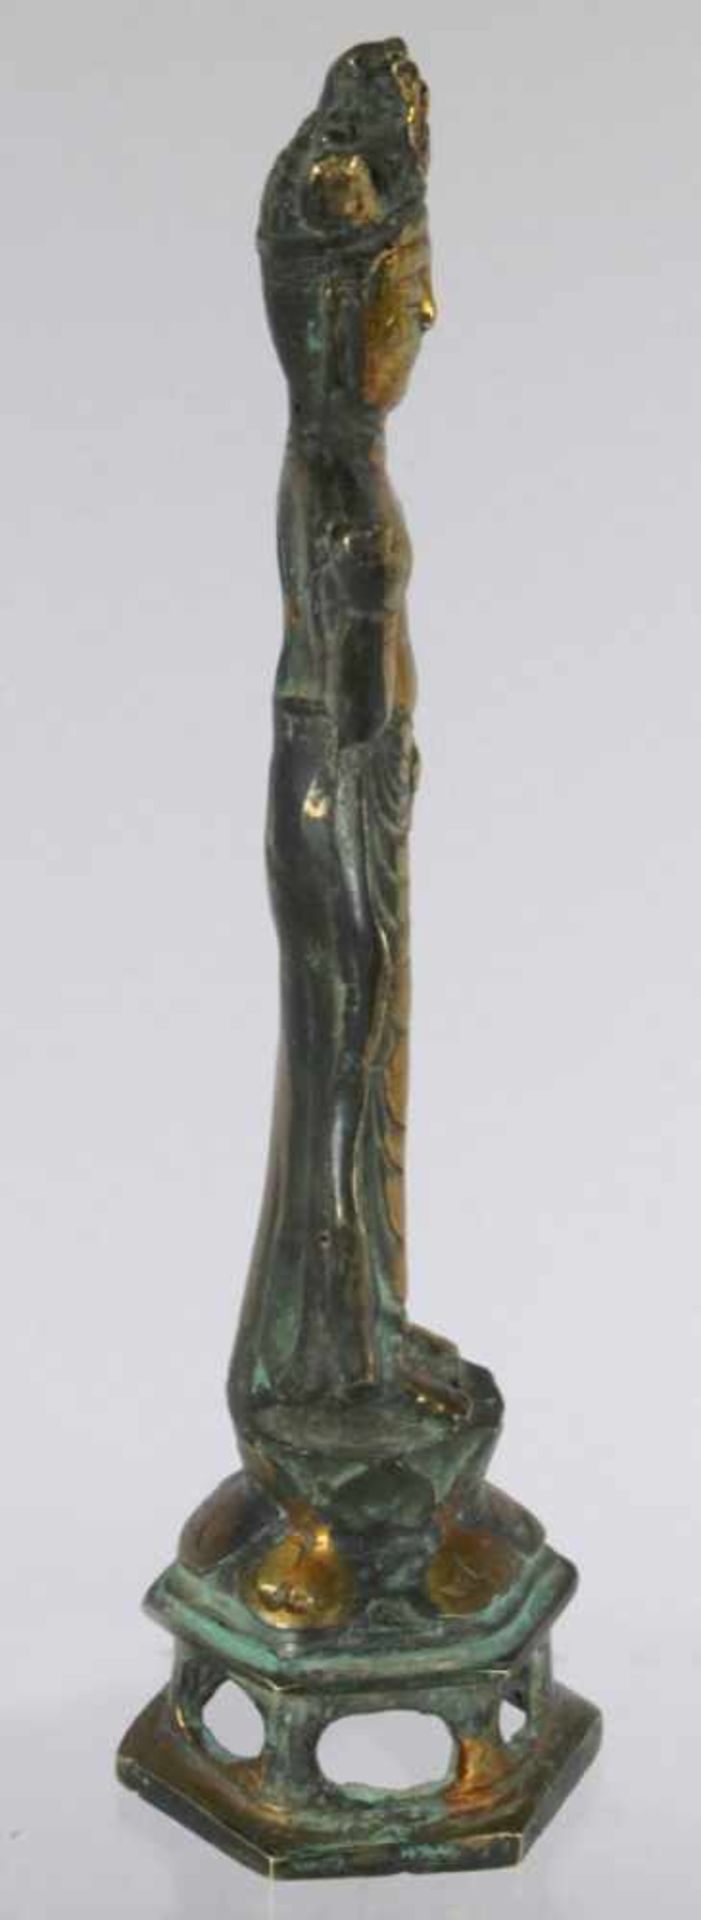 Bronze-Plastik, "Buddha", China, 19./20. Jh., auf durchbrochen gearbeitetem - Bild 4 aus 5